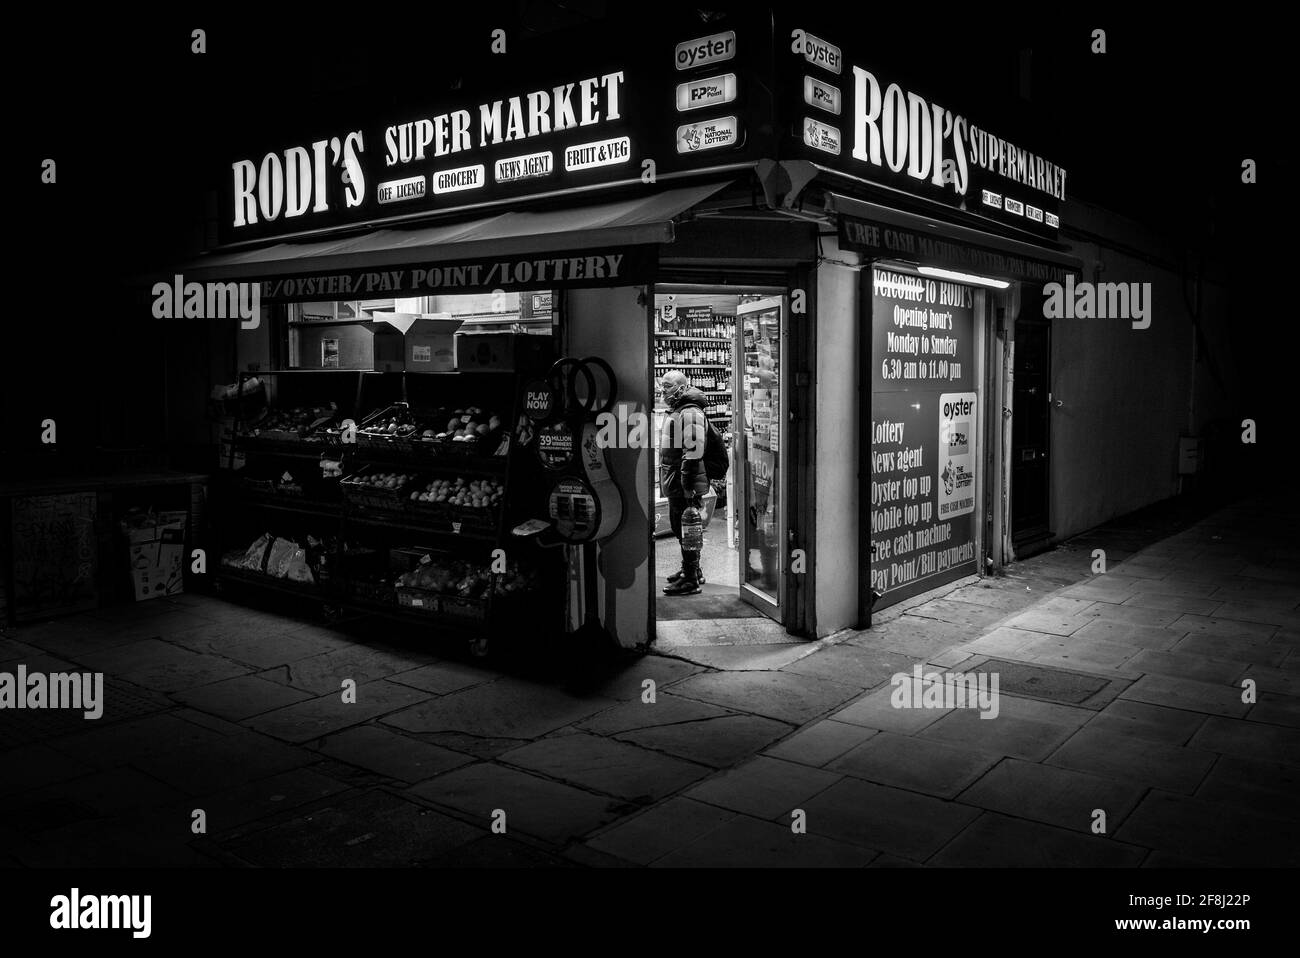 tradicional tienda de esquina, agencia de noticias y tienda de conveniencia en la noche de londres, imagen nocturna en blanco y negro Foto de stock